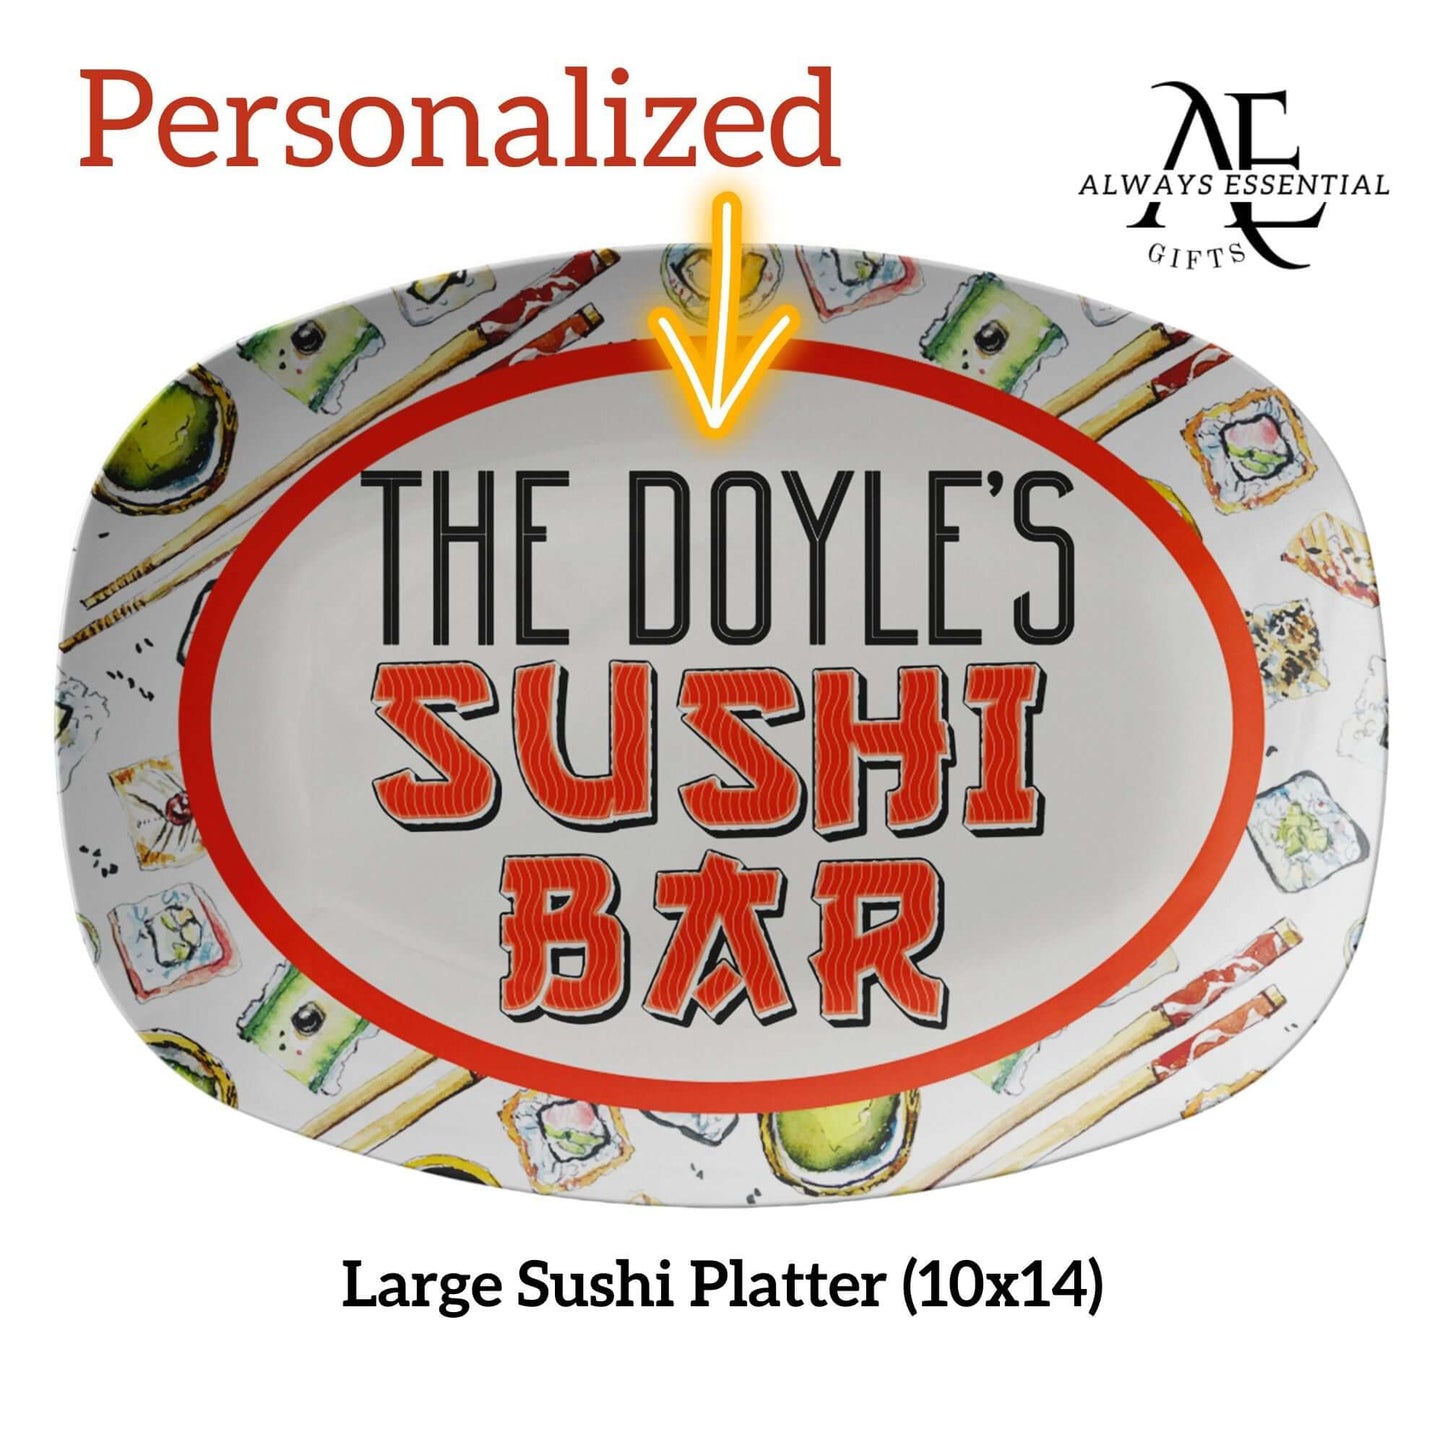 Personalized Sushi Serving Platter, Large Sushi Tray Customized